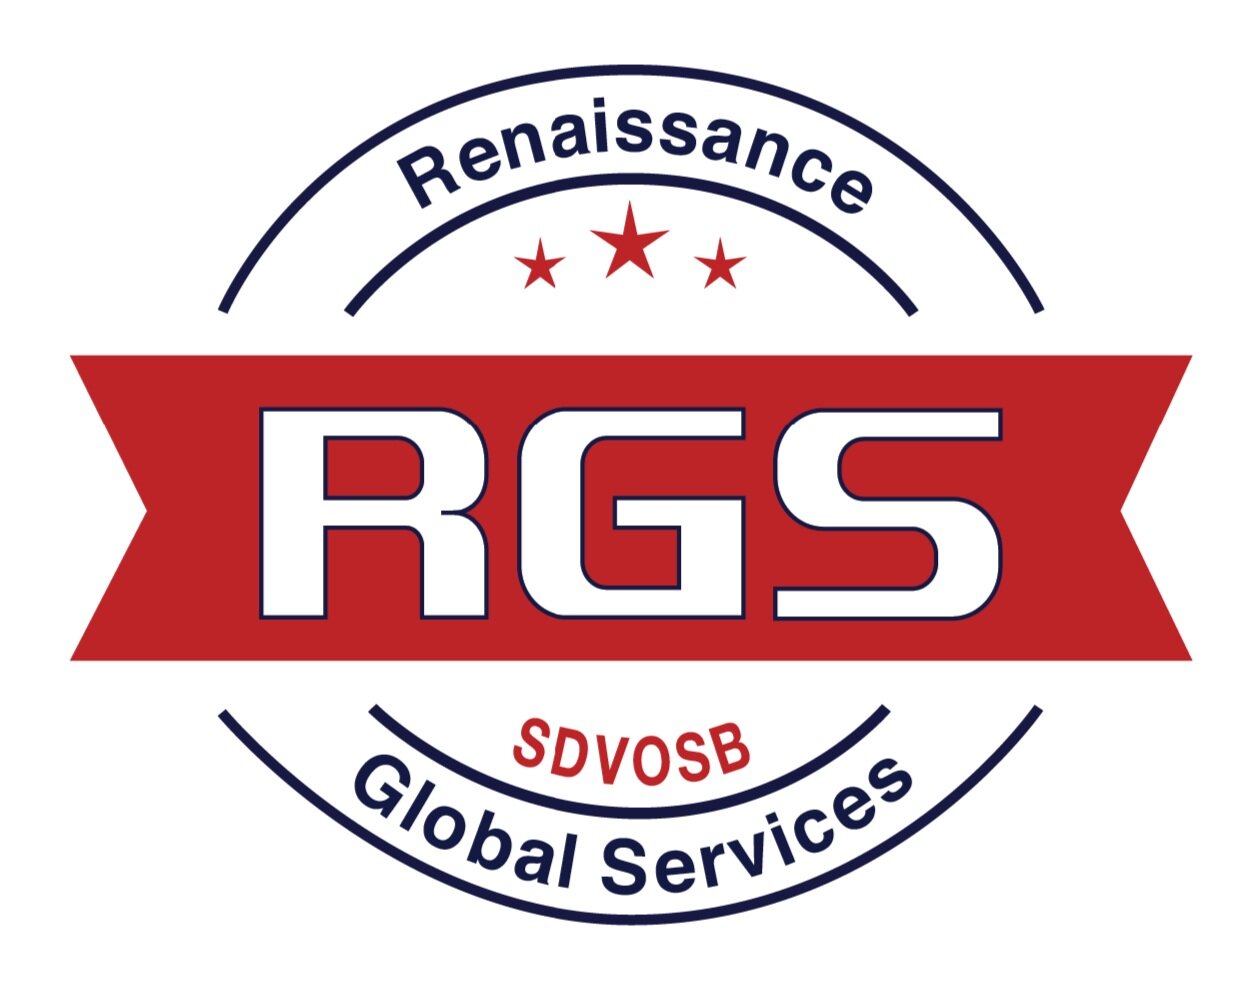 Renaissance Global Services